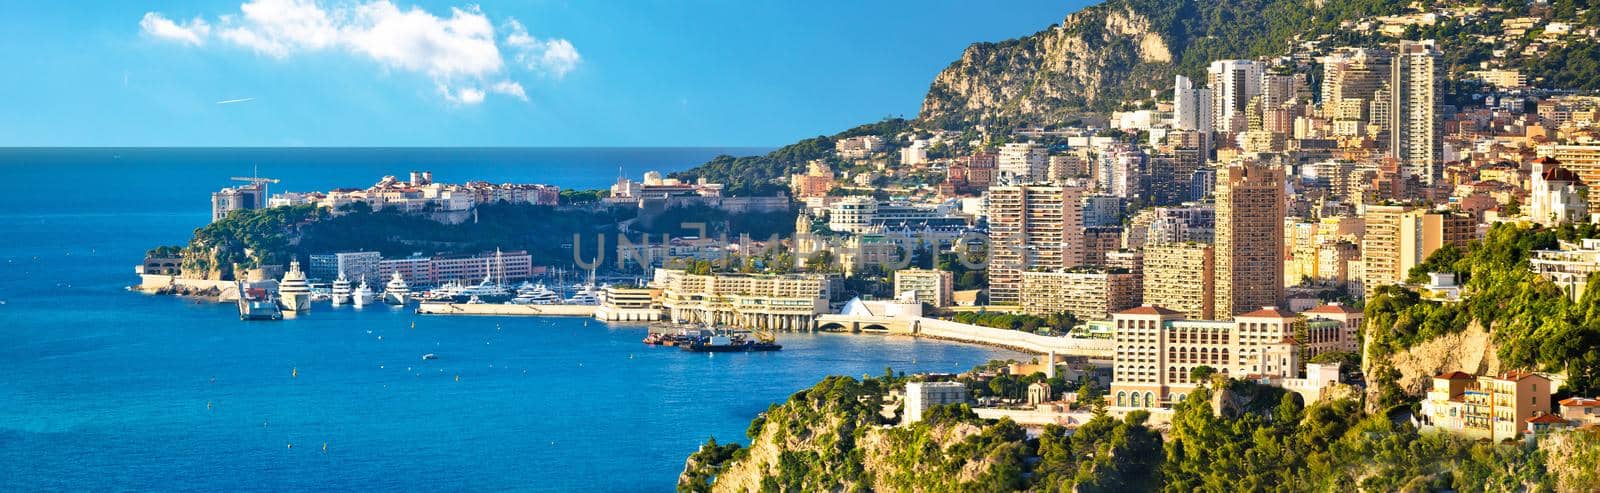 Monaco cityscape and coastline panoramic view, Cote d'Azur, Principality of Monaco